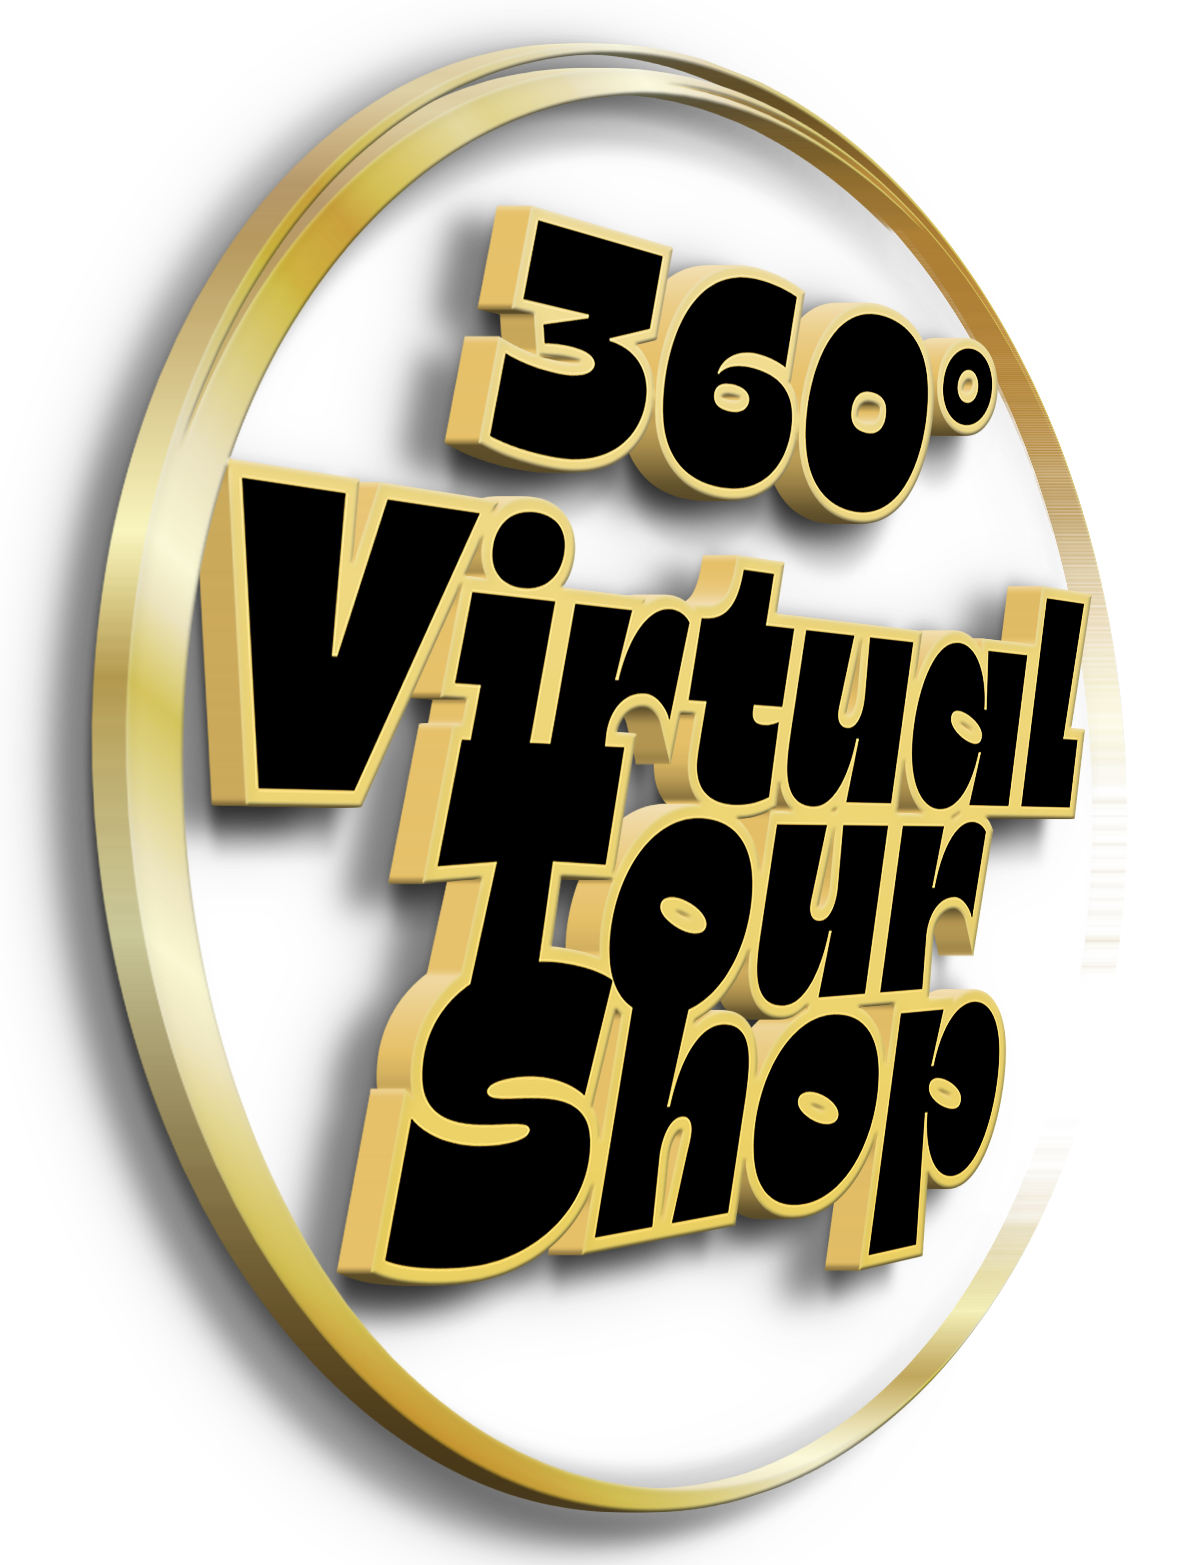 360 virtual tour shop logo